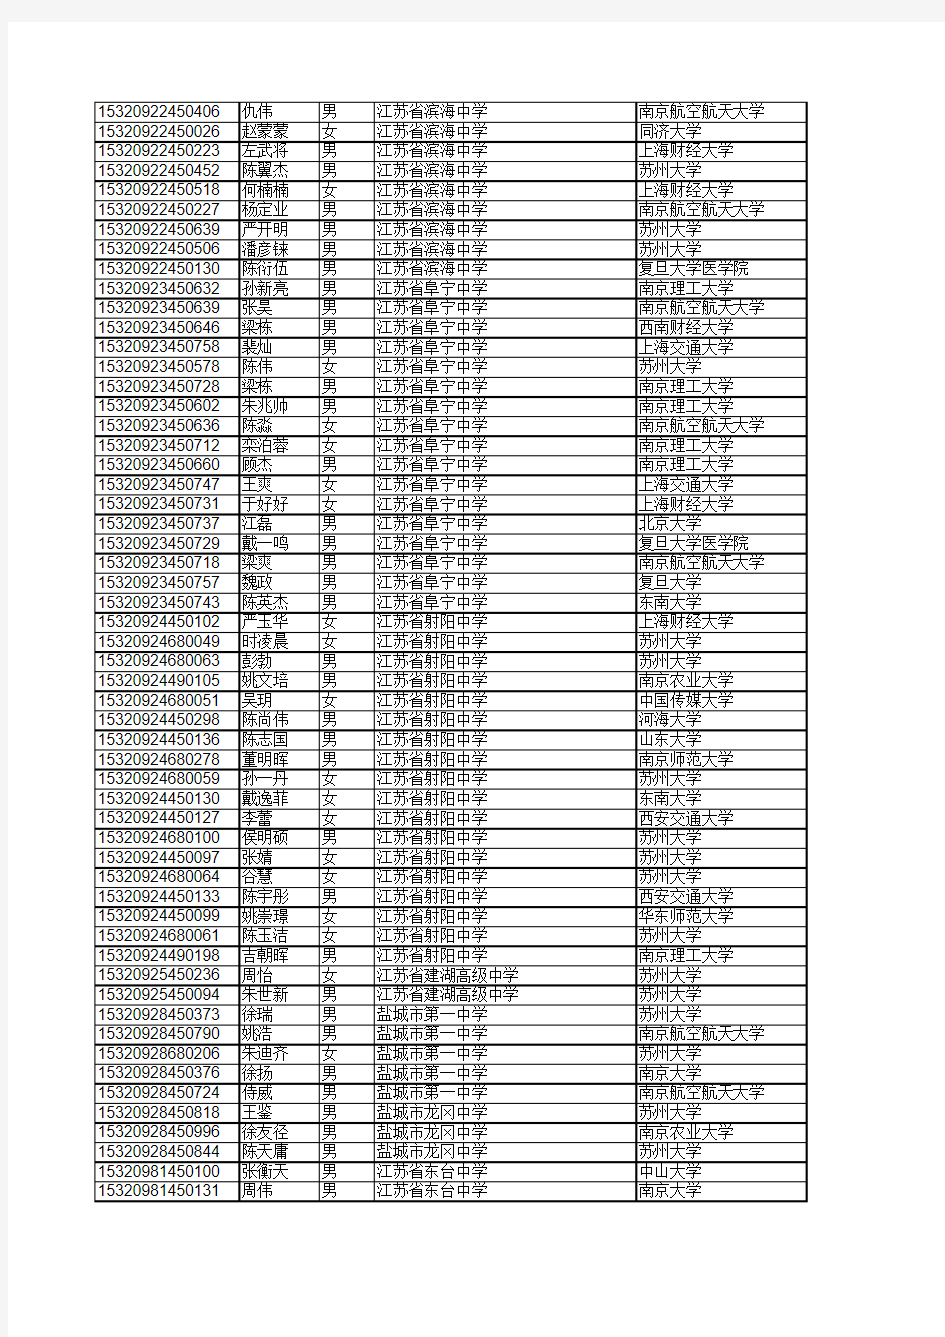 江苏省2015年高校自主招生录取考生名单